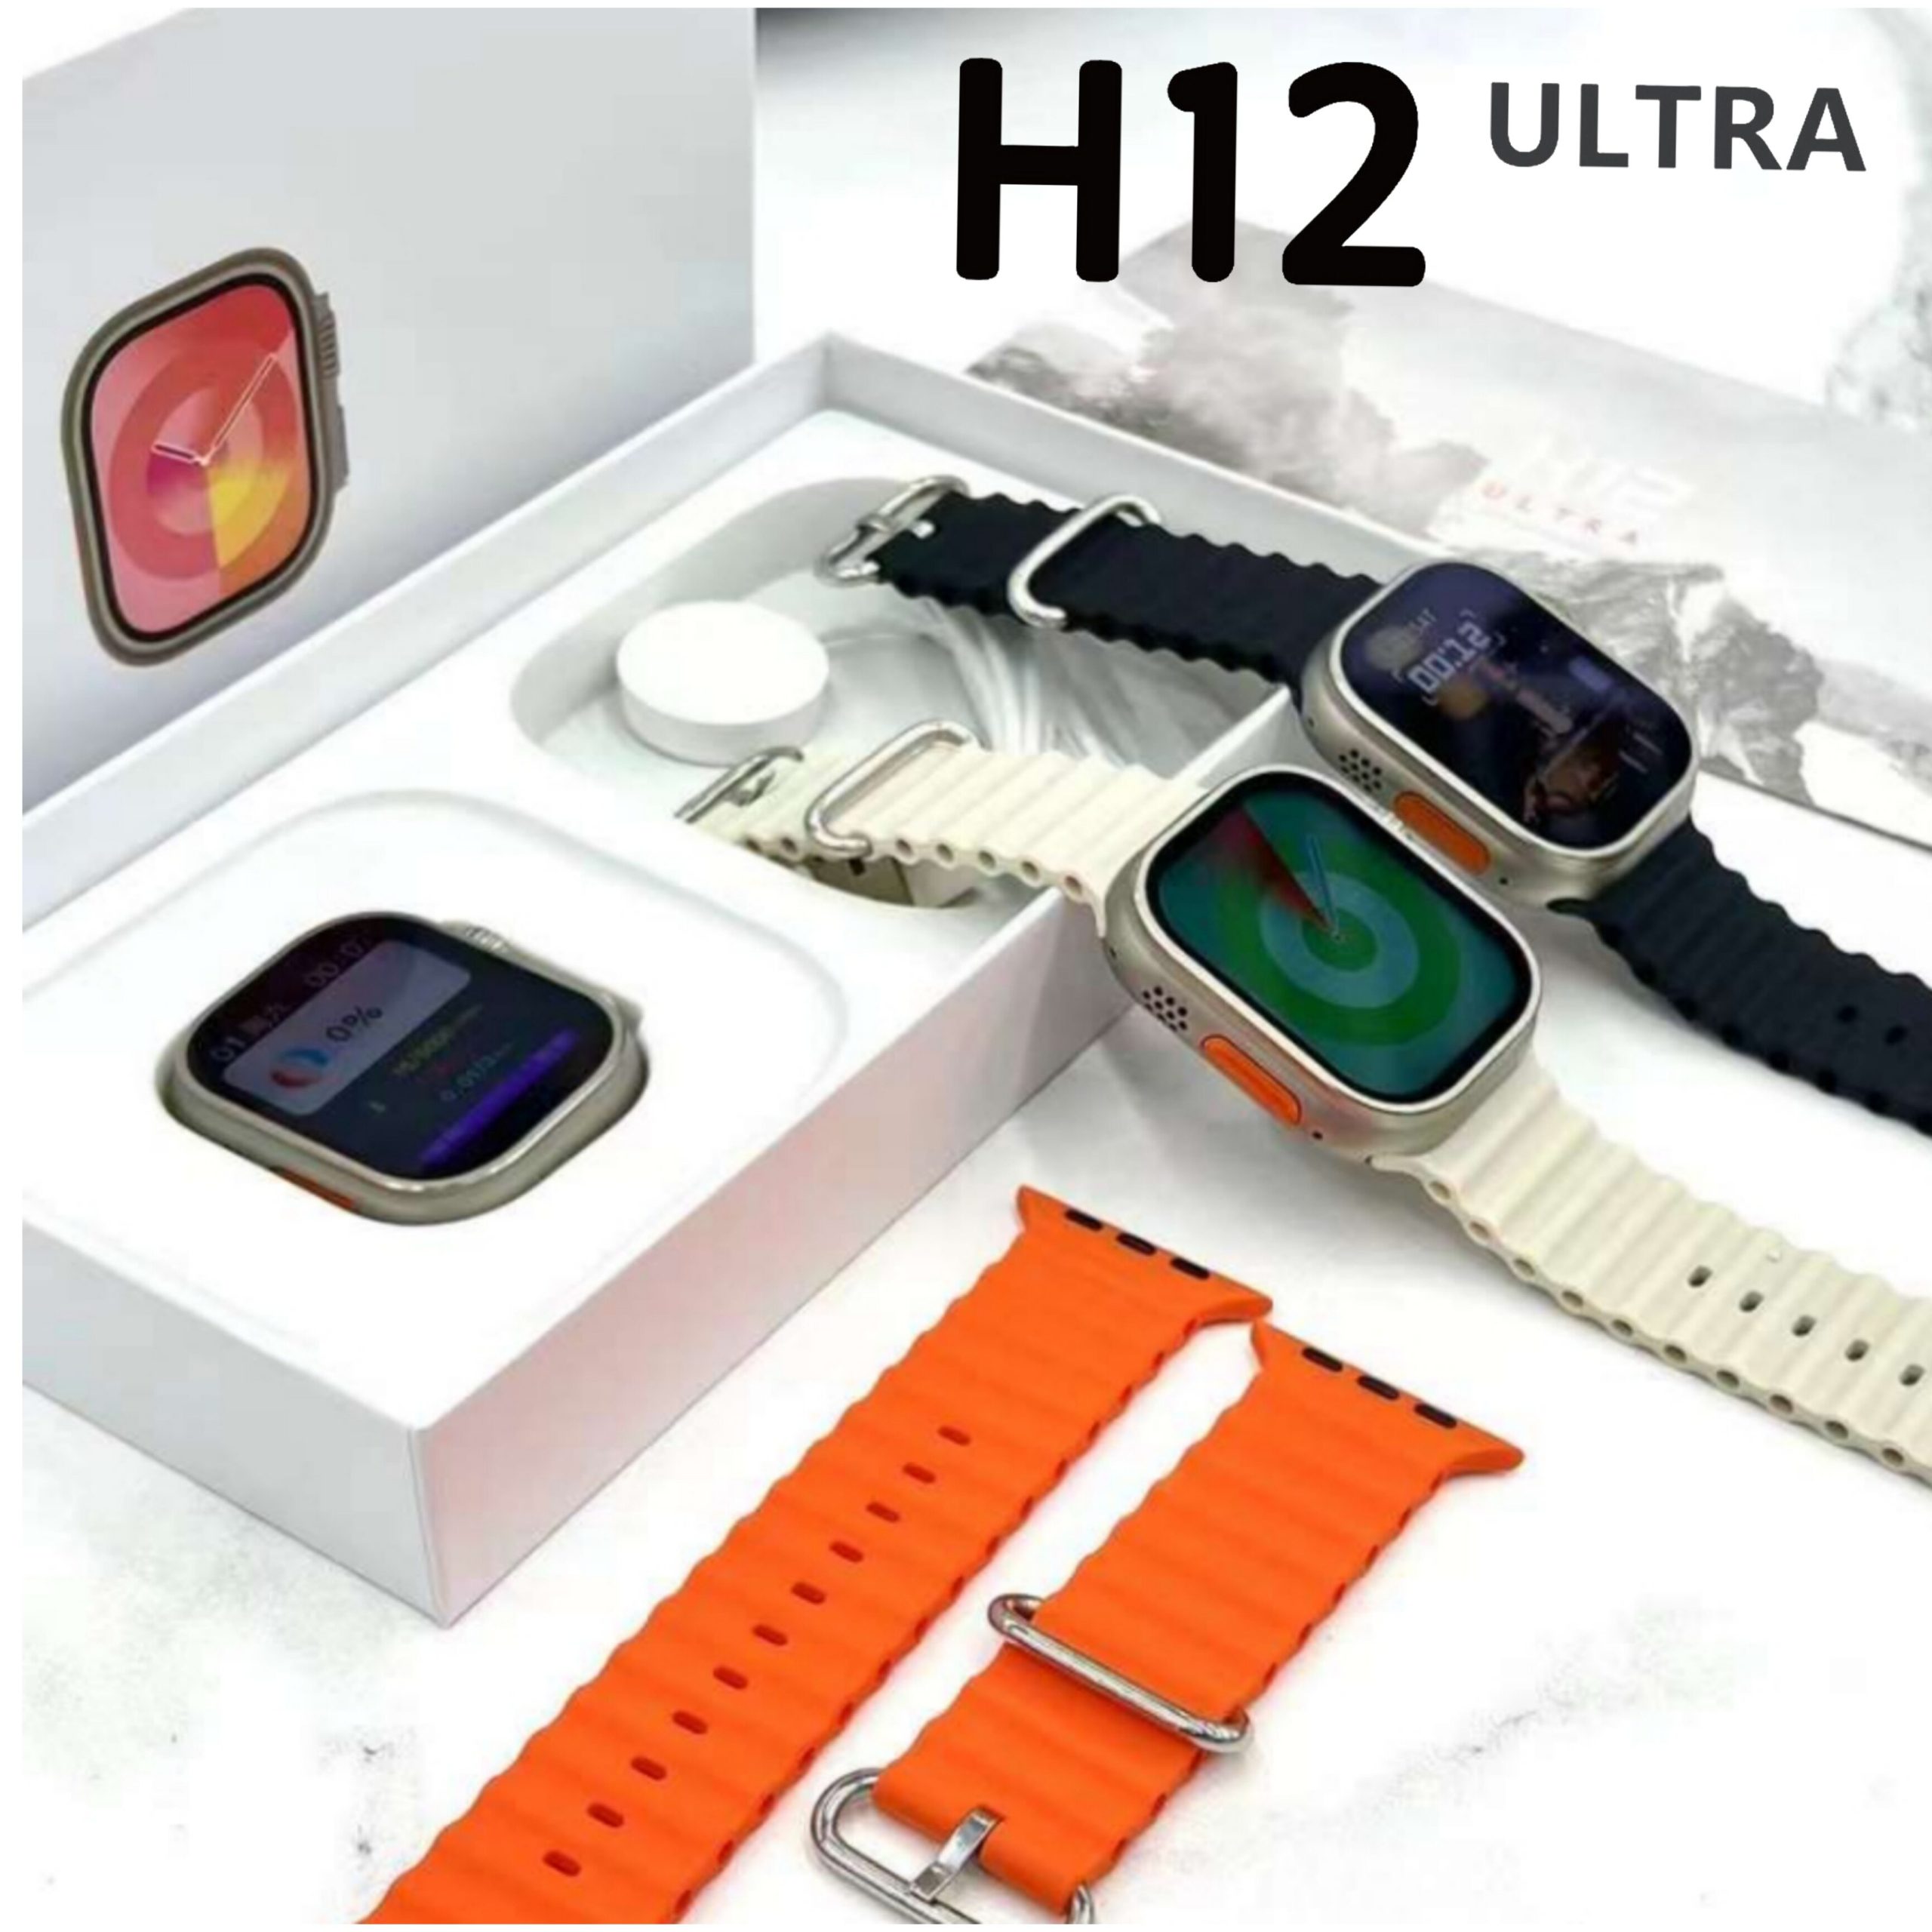 H12 Ultra Smart Watch